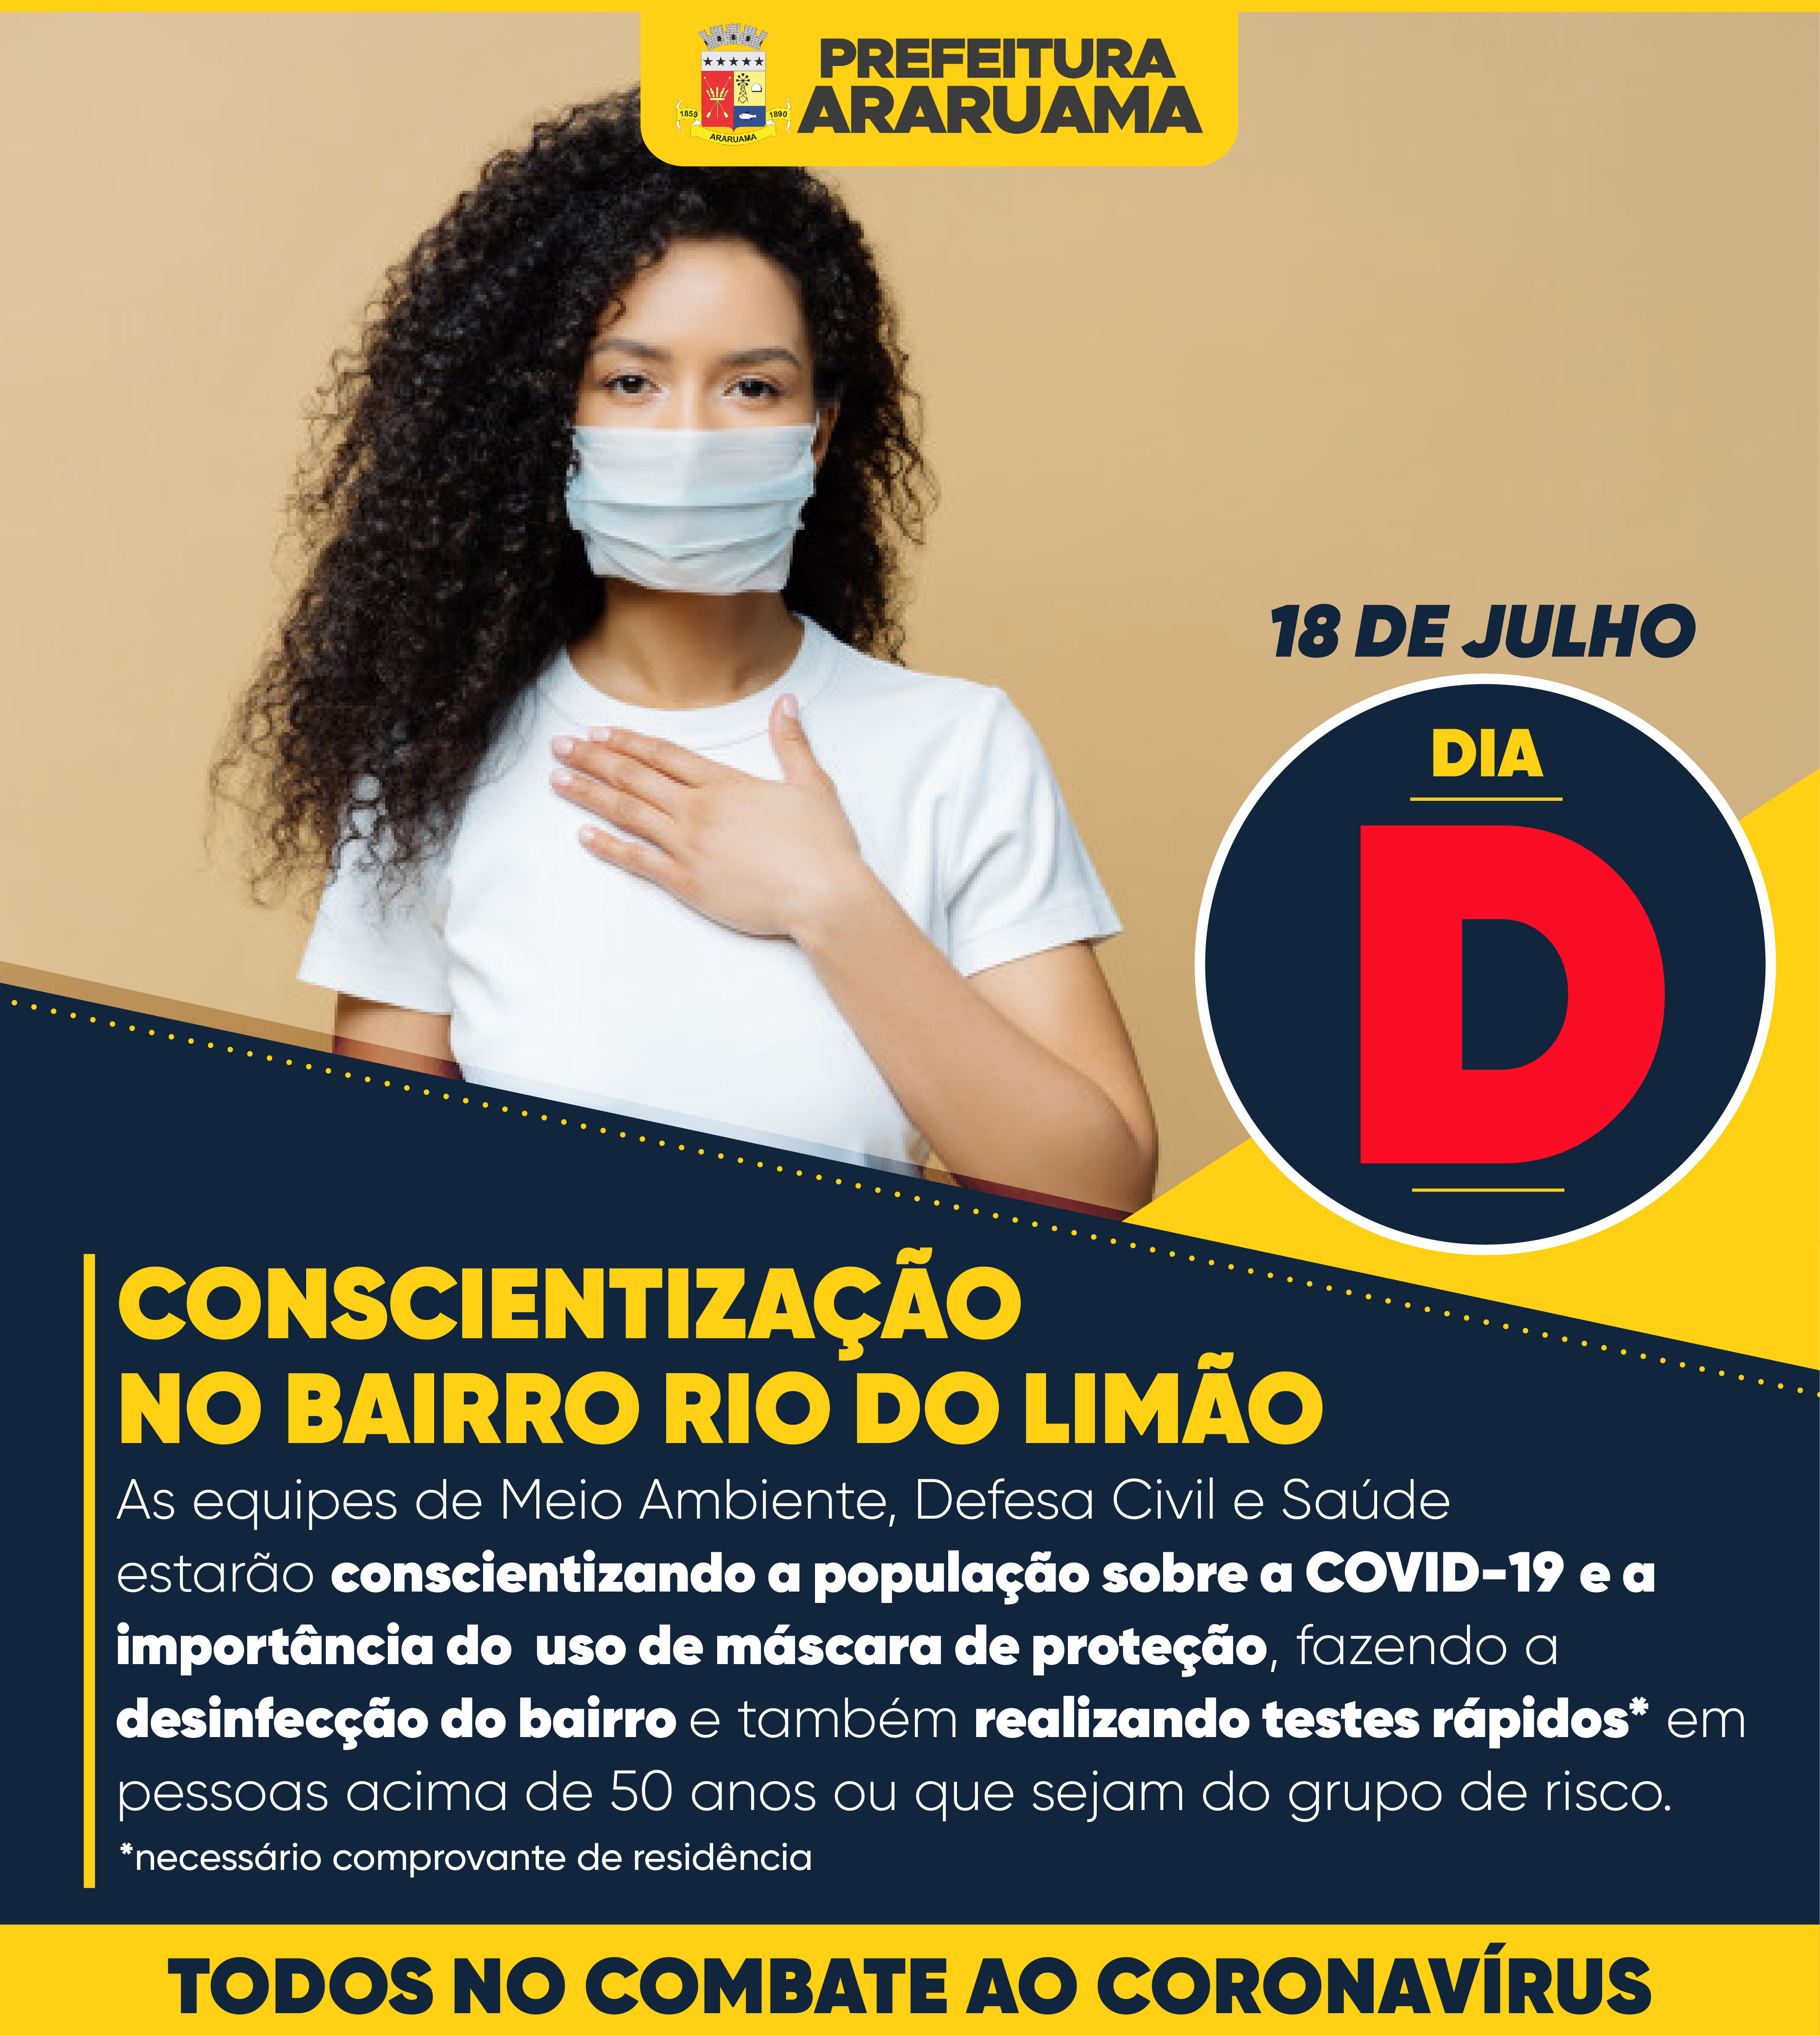 Prefeitura de Araruama vai realizar Dia D de Conscientização sobre os riscos do Coronavírus no bairro Rio do Limão